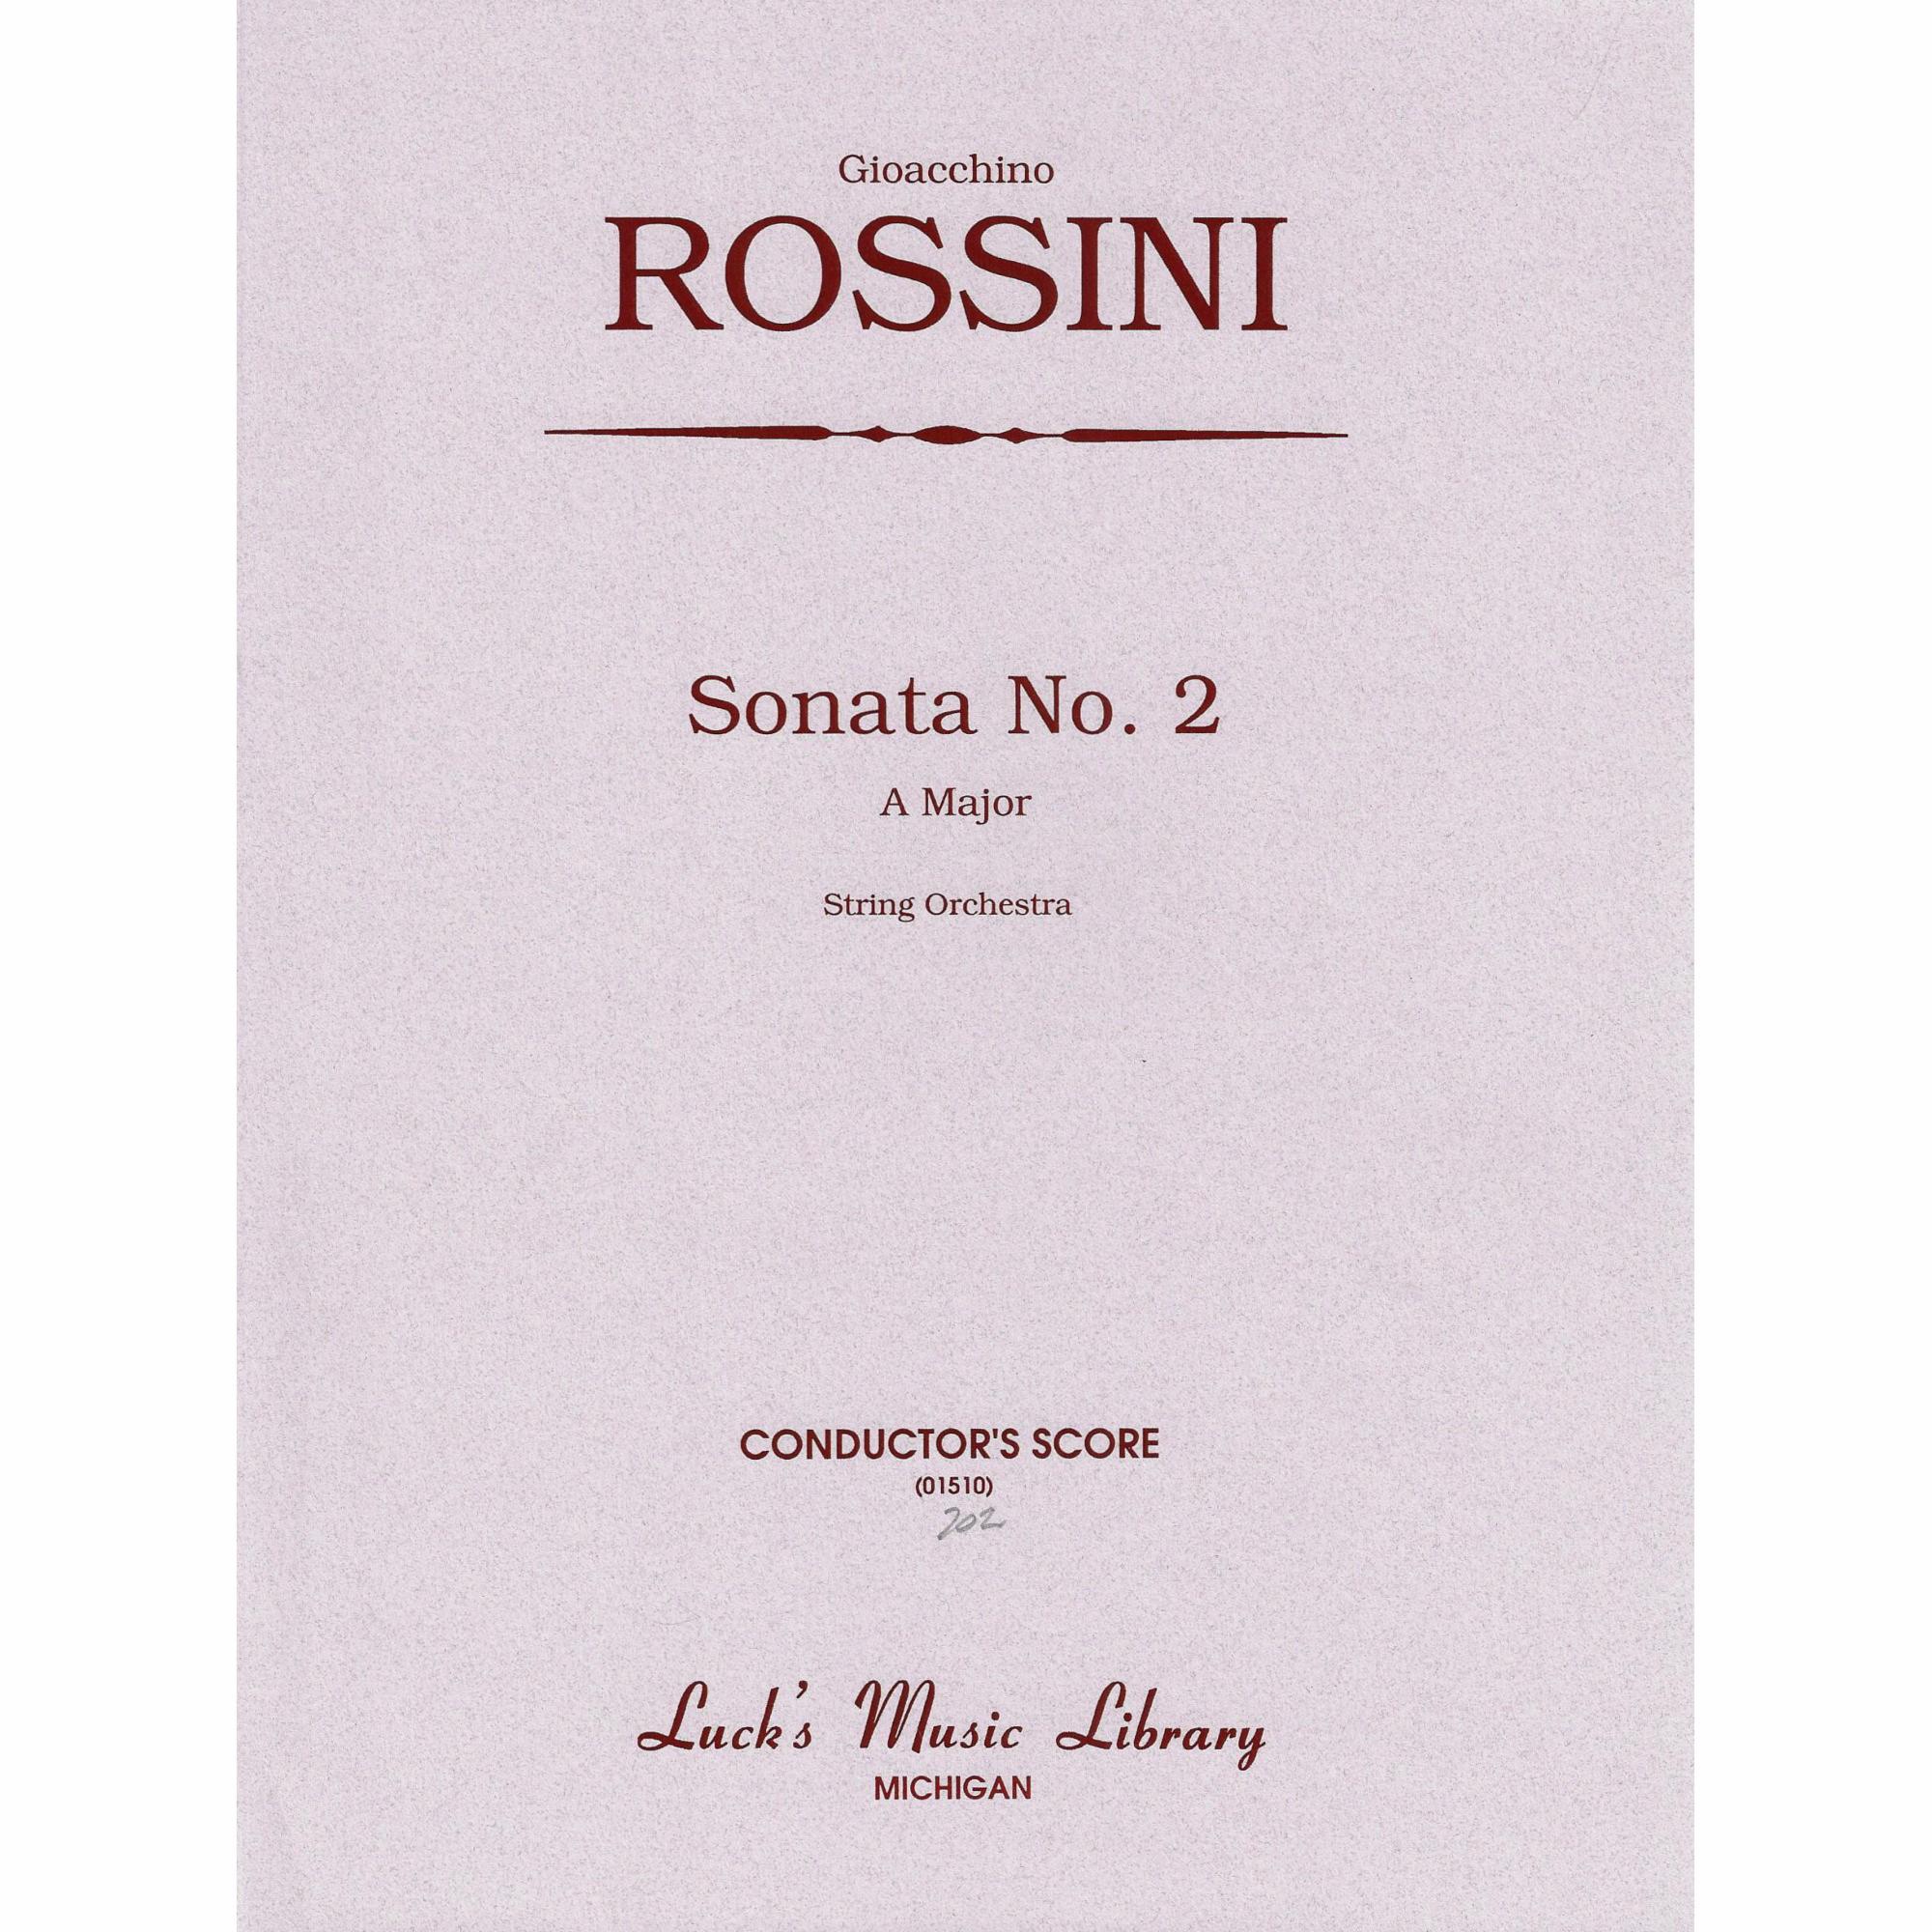 Rossini -- Sonata No. 2 in A Major for String Orchestra